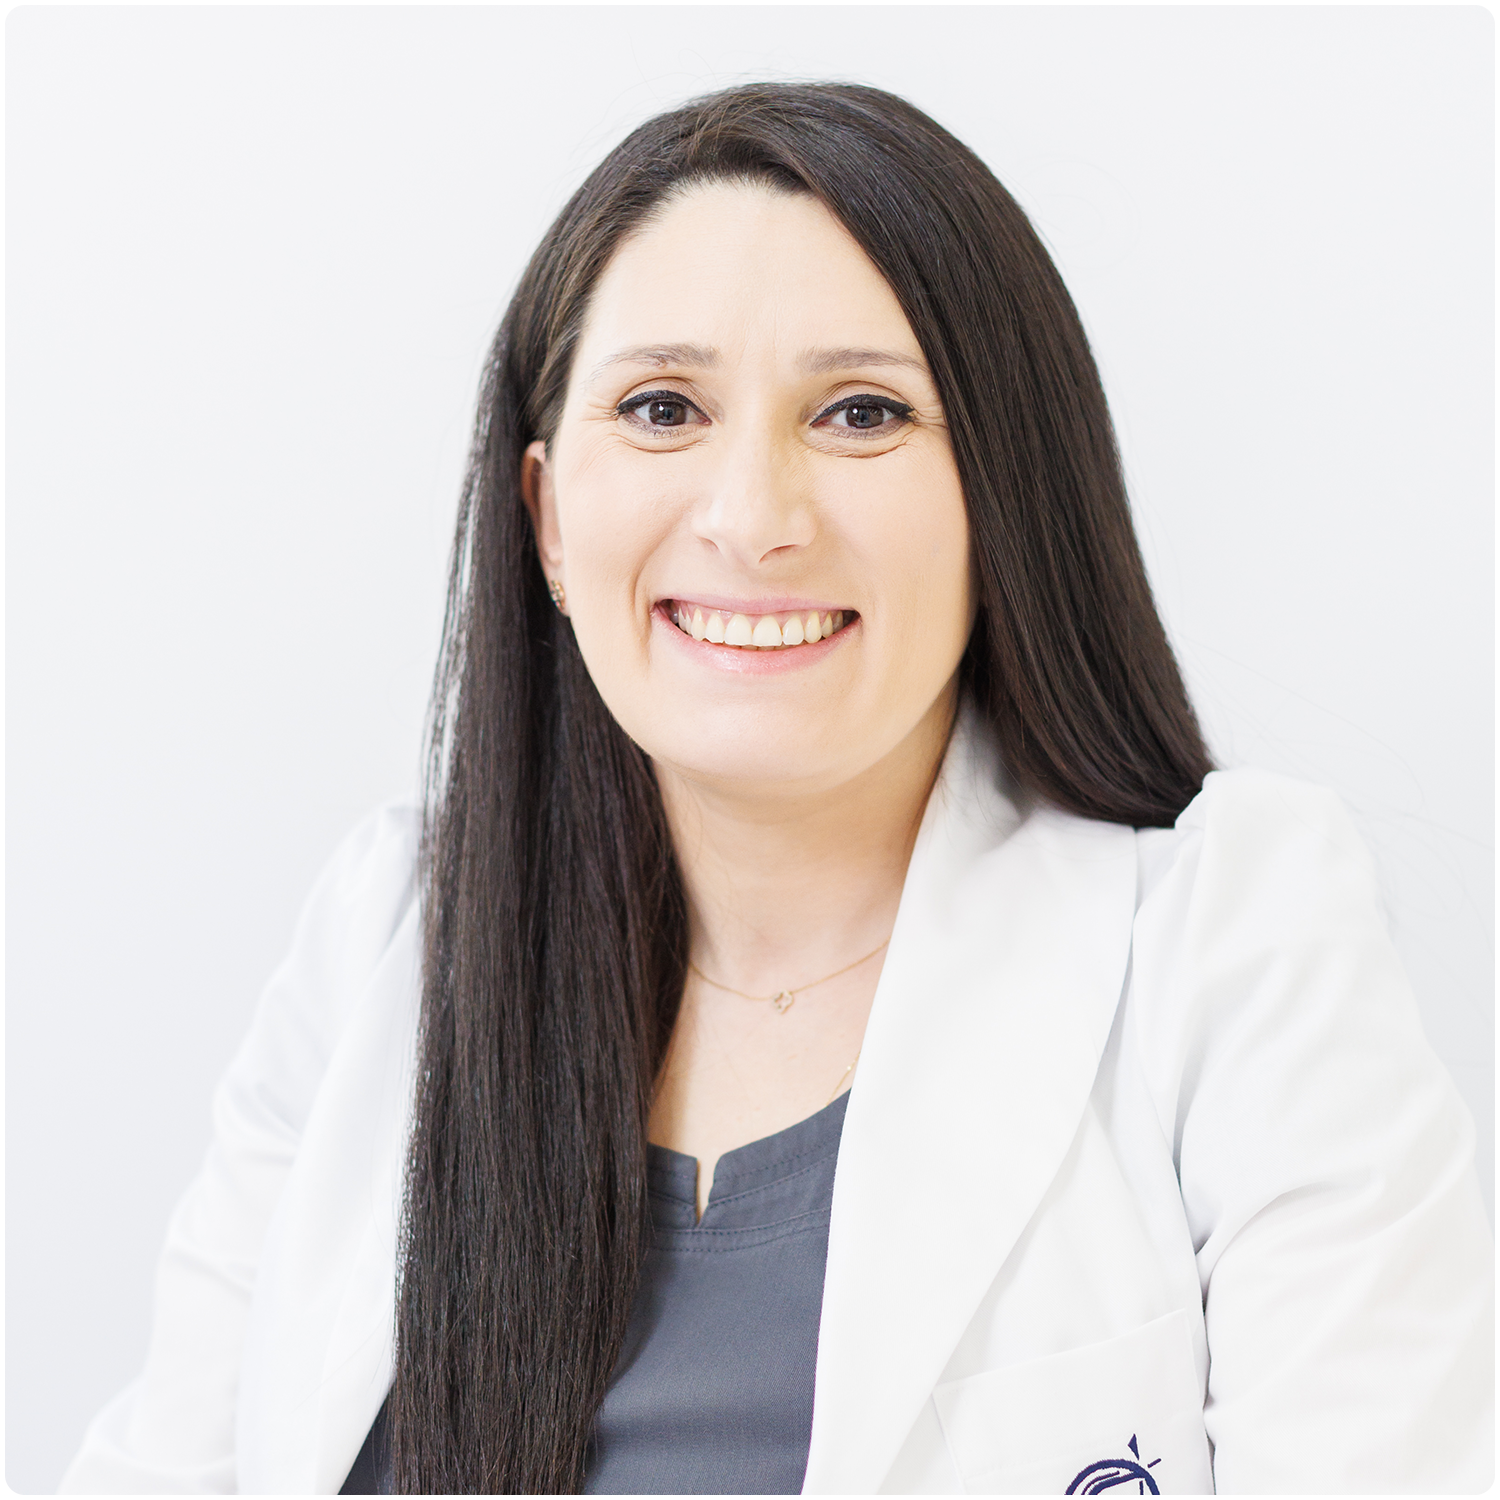 dr ana-maria leasu branet nov 23 - skinmed clinic